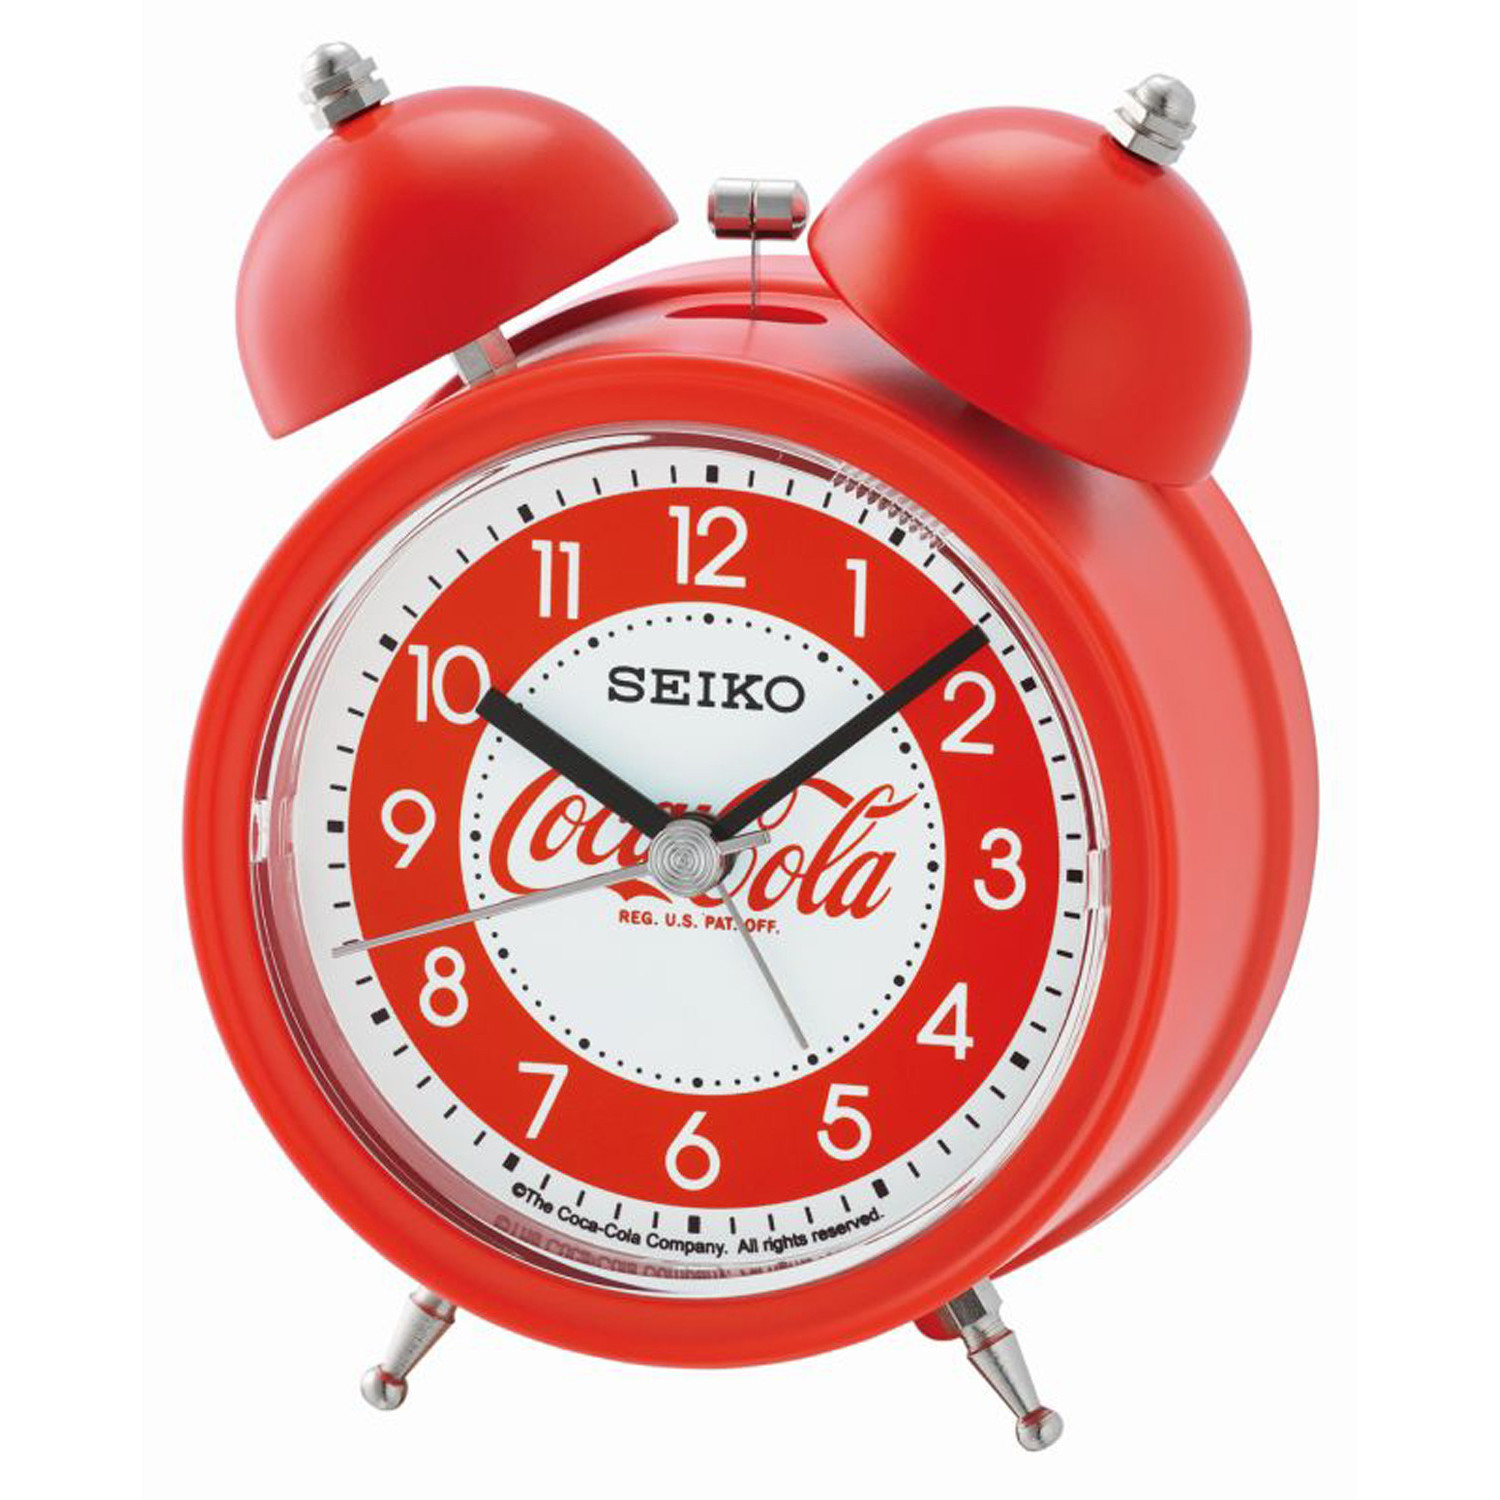 Réveil Seiko Coca-Cola rouge sonnerie cloche